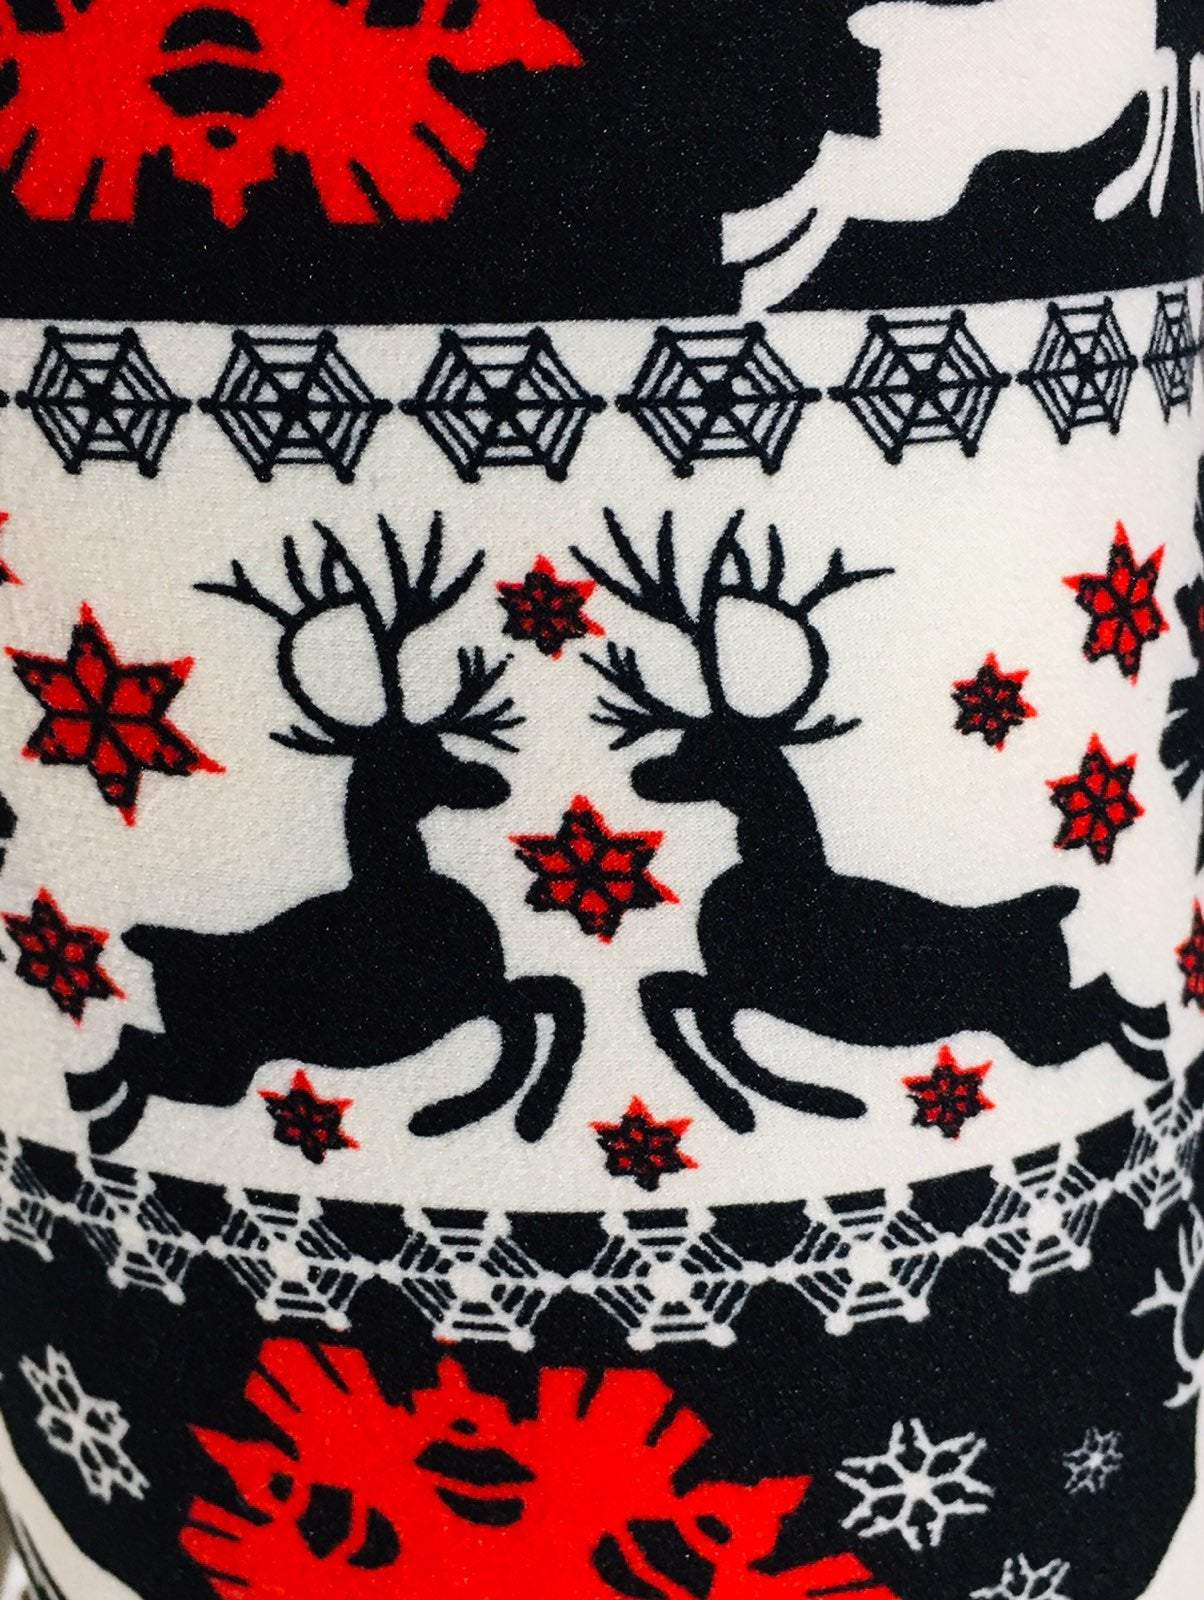  Soft Leggings For Women Christmas Reindeer Print Legging  Tights Red L